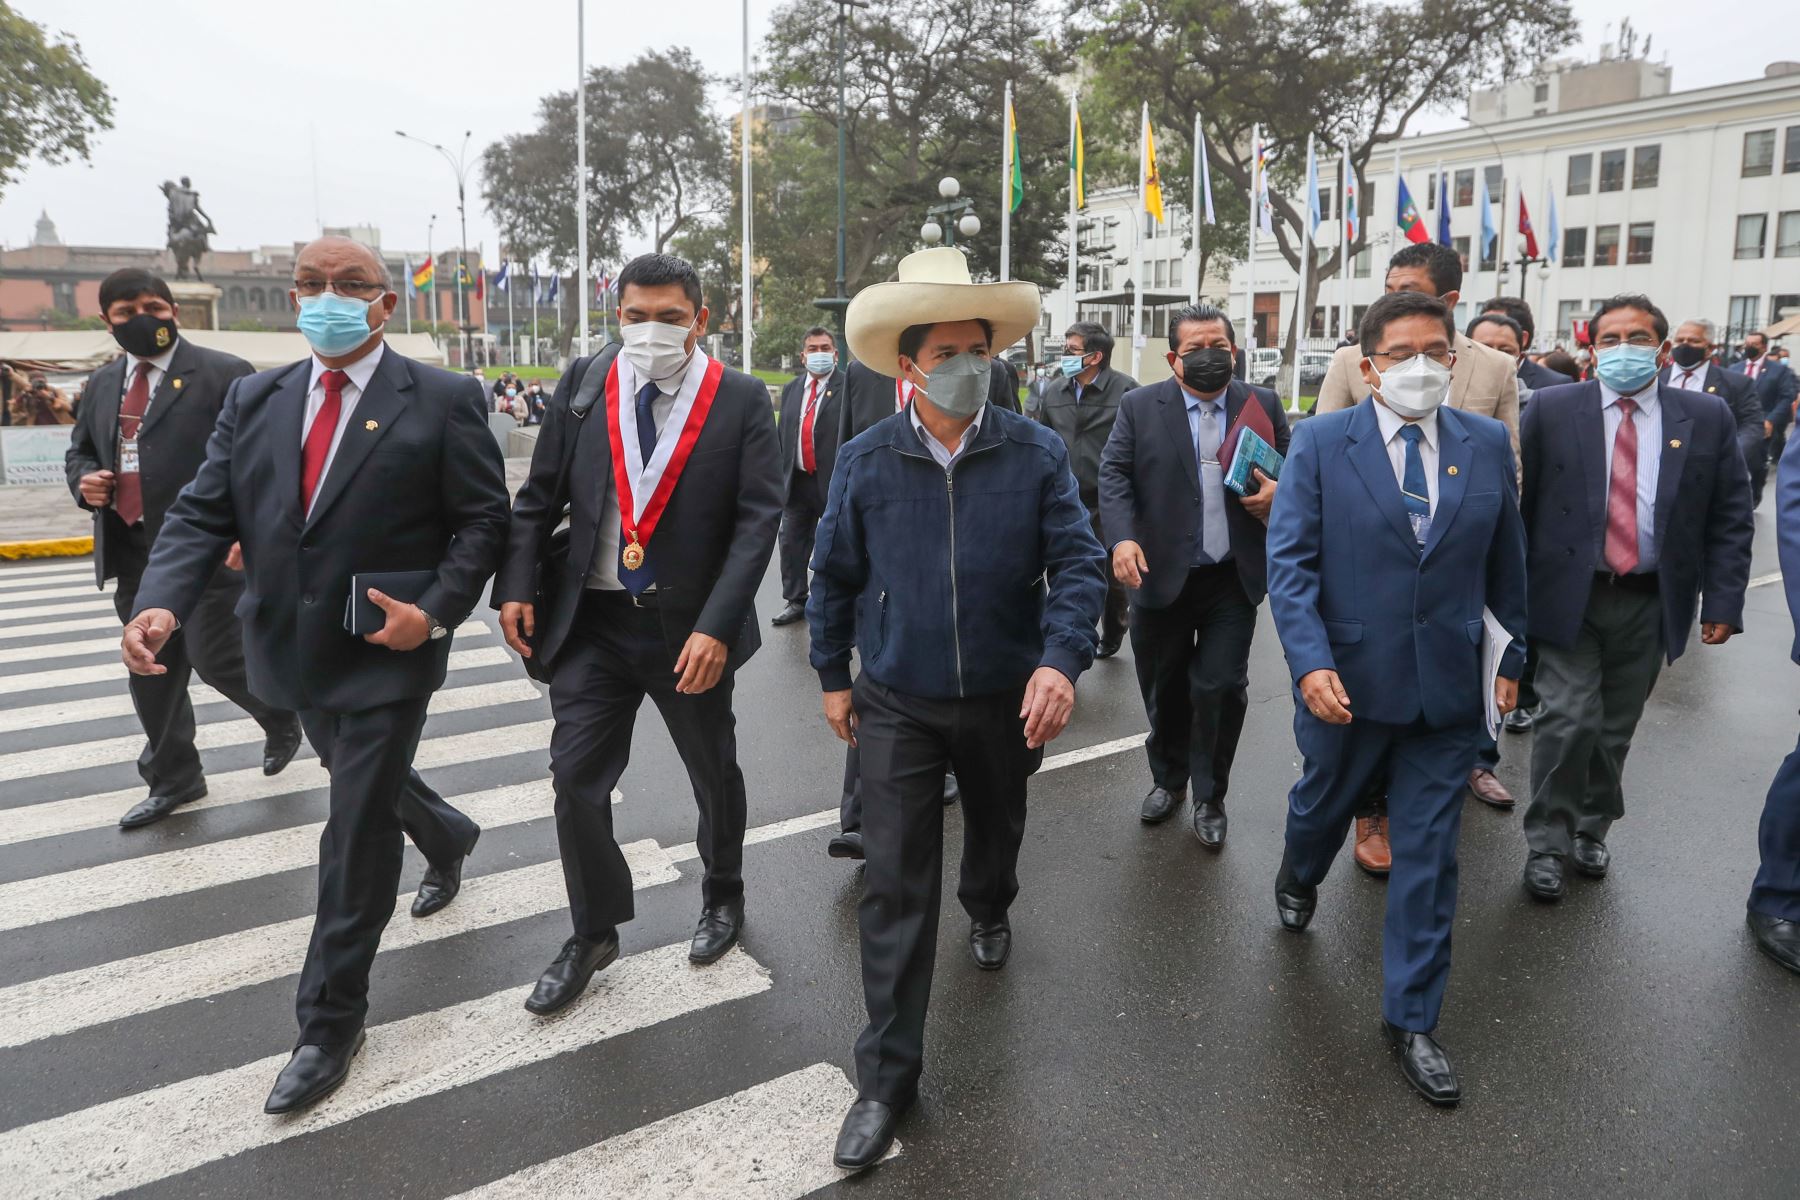 El presidente Pedro Castillo llega a la sede del Congreso y se reúne con la Mesa Directiva de ese poder del Estado.
Foto: ANDINA/Congreso de la República